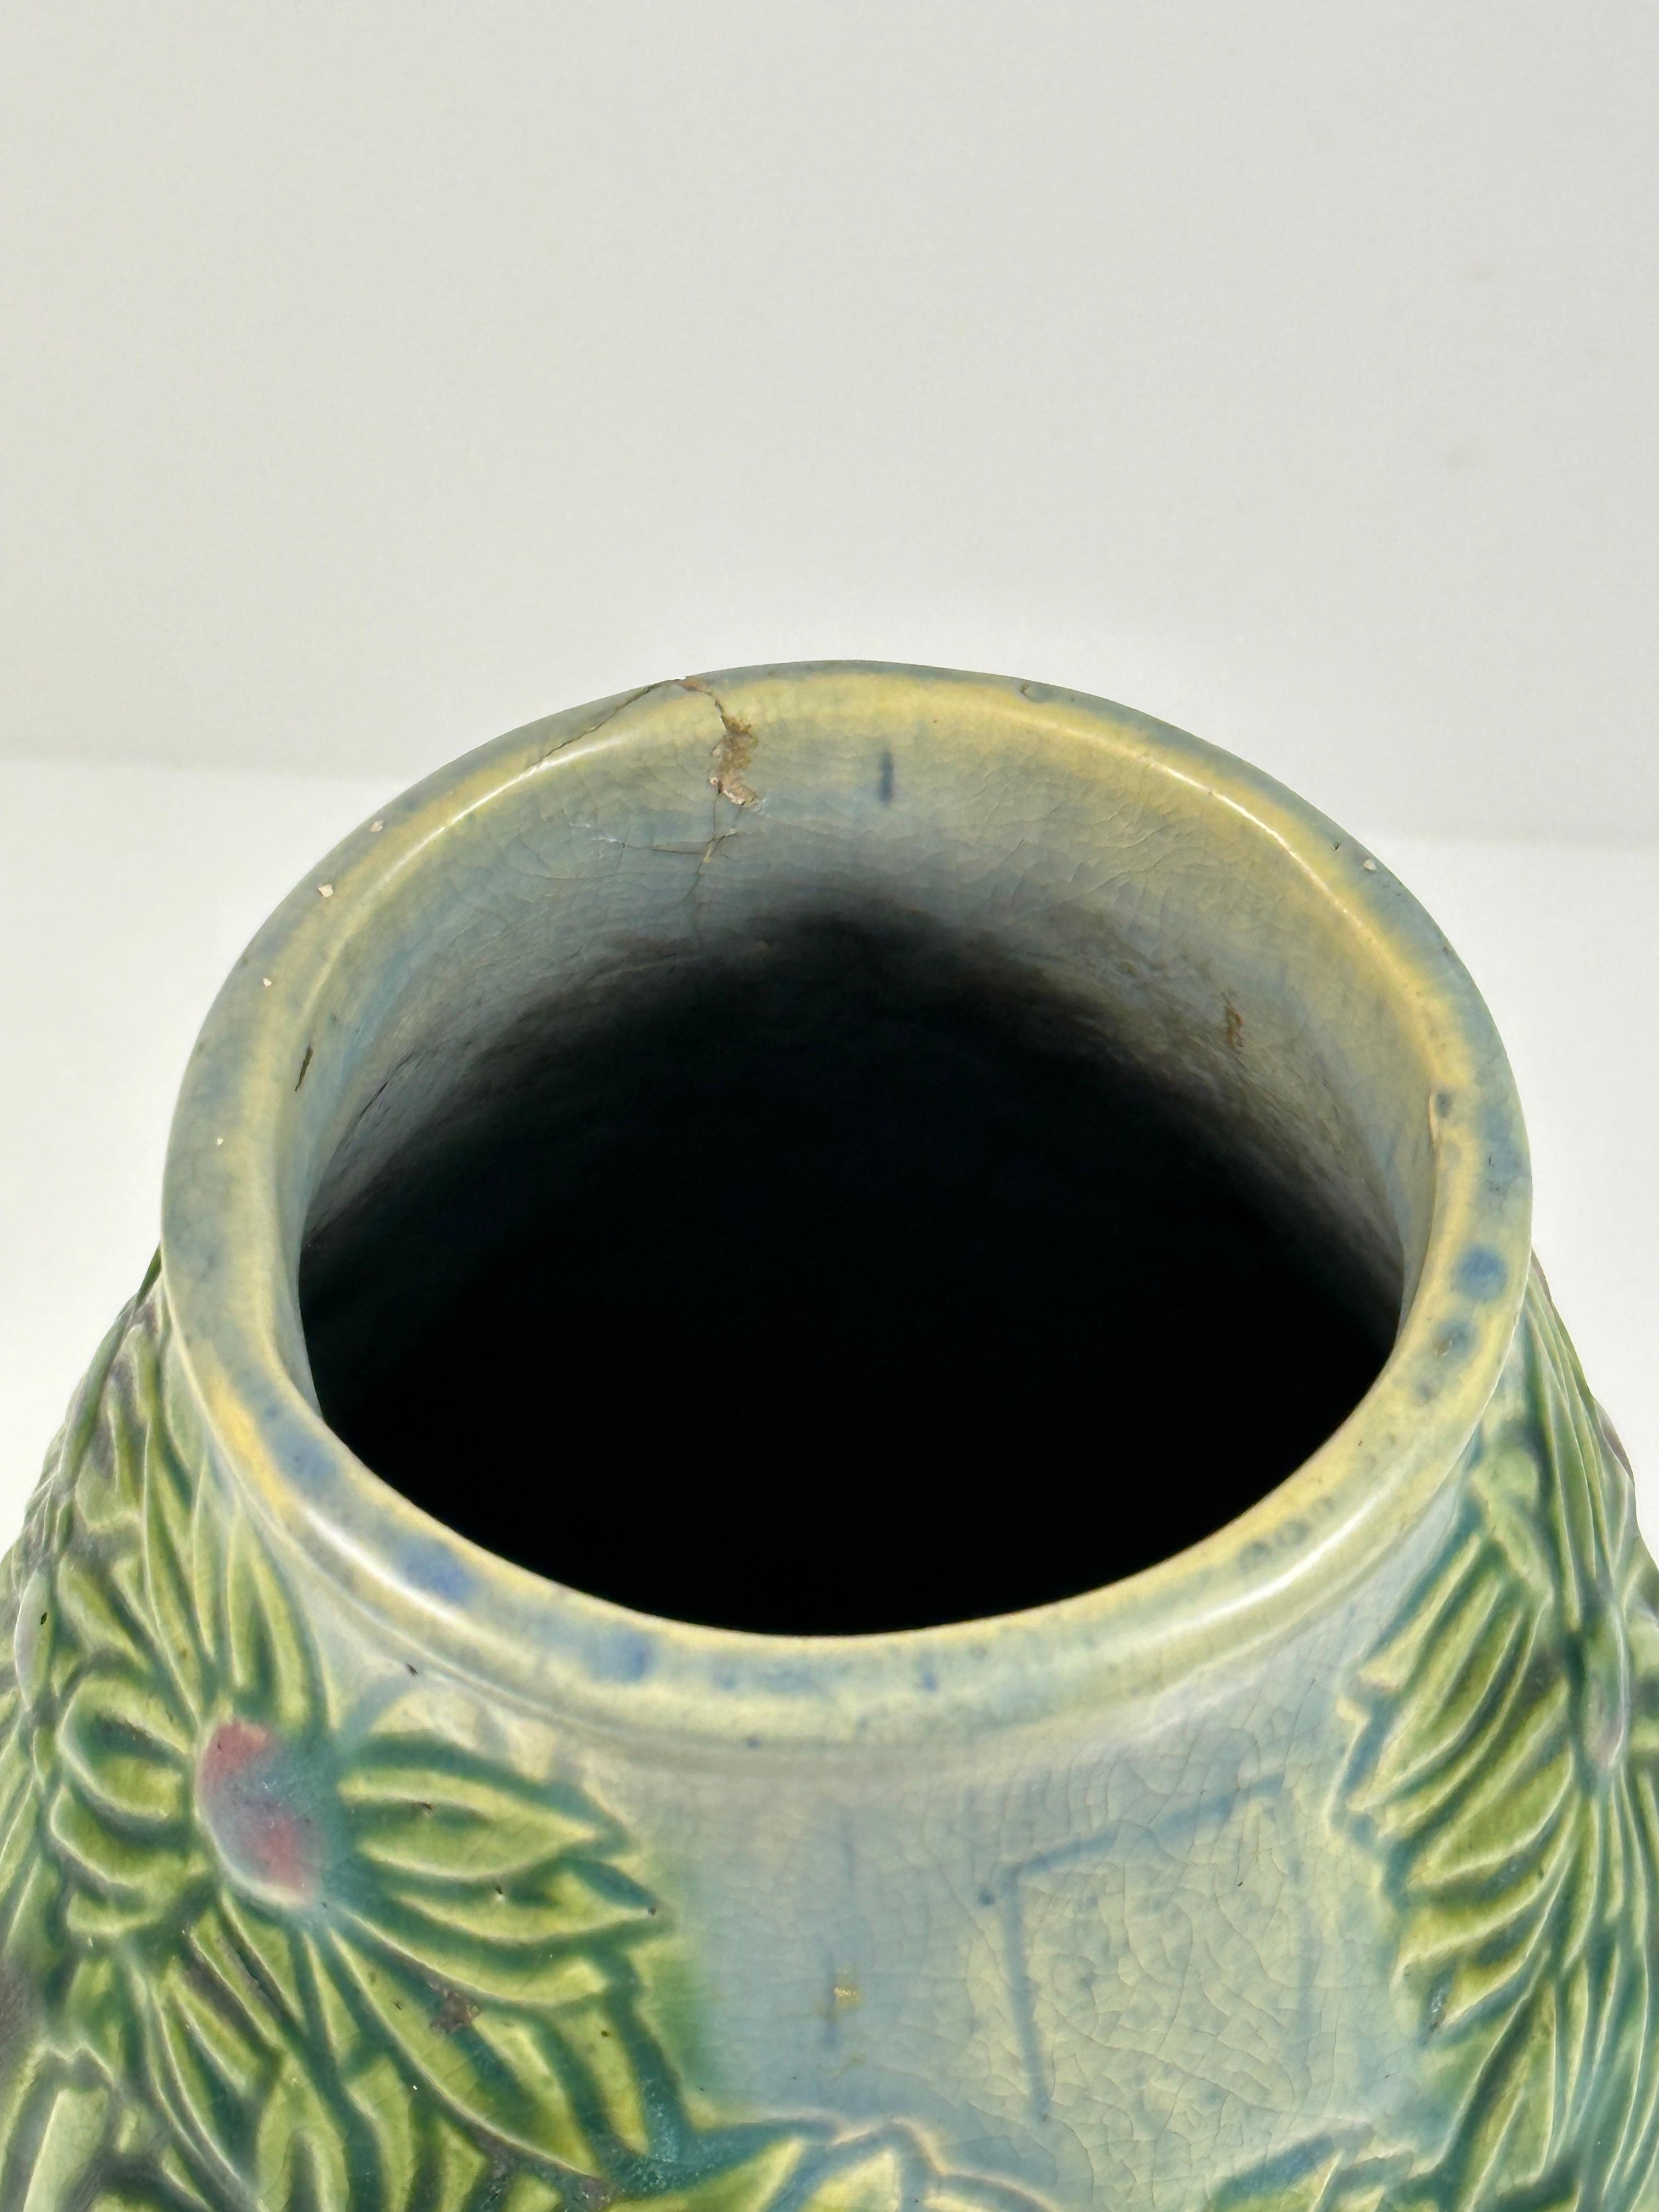 Roseville Palm Tree Vase